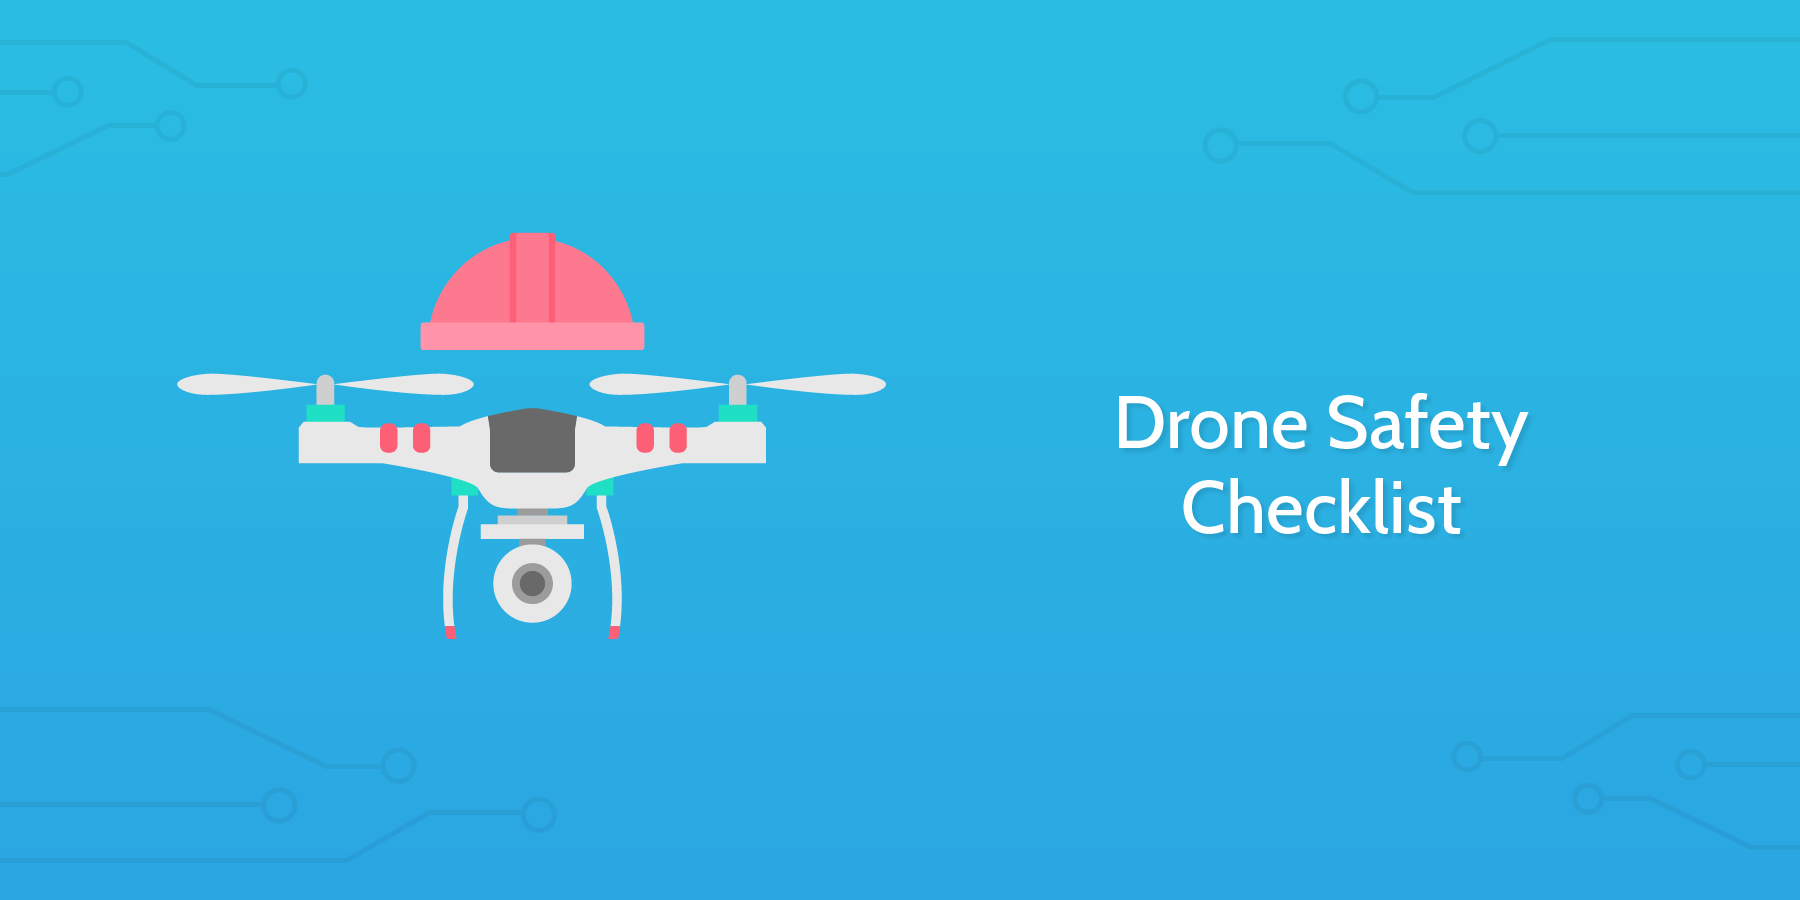 Drone Safety Checklist